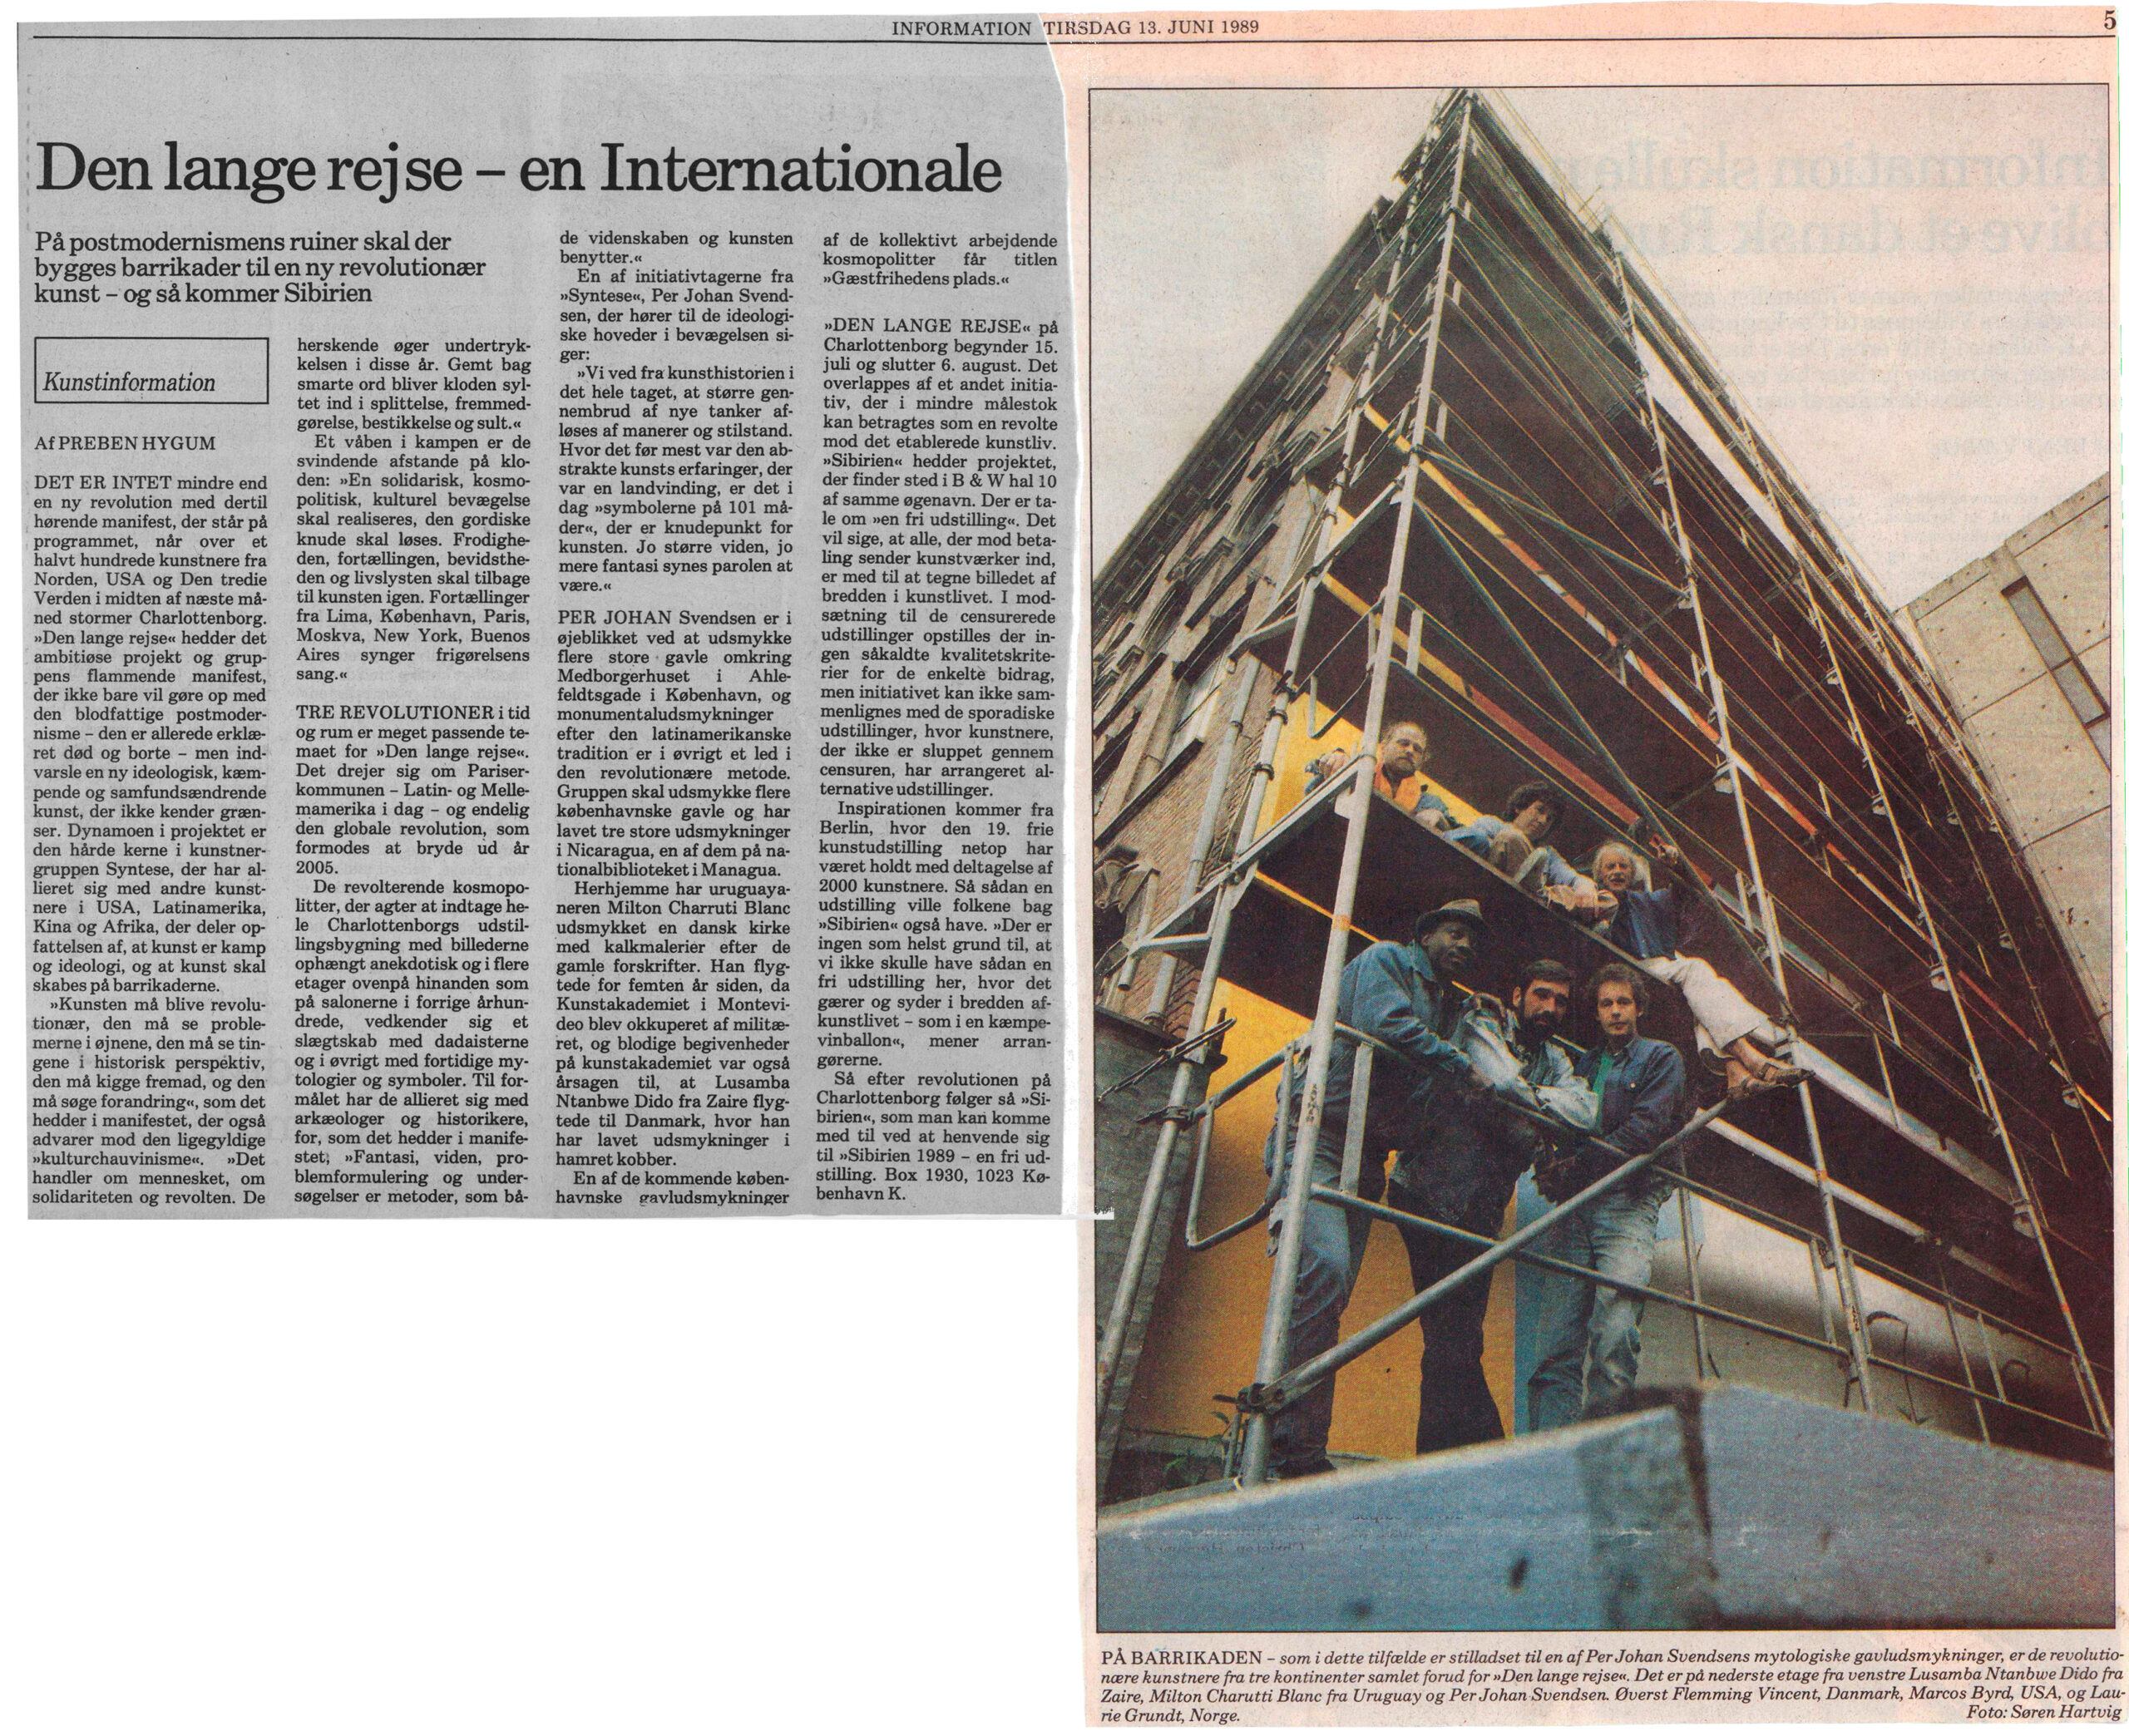 Den lange rejse, en internationale. Omtale (Den lange rejse. Charlottenborg 1989, København). Preben Hygum. Information.